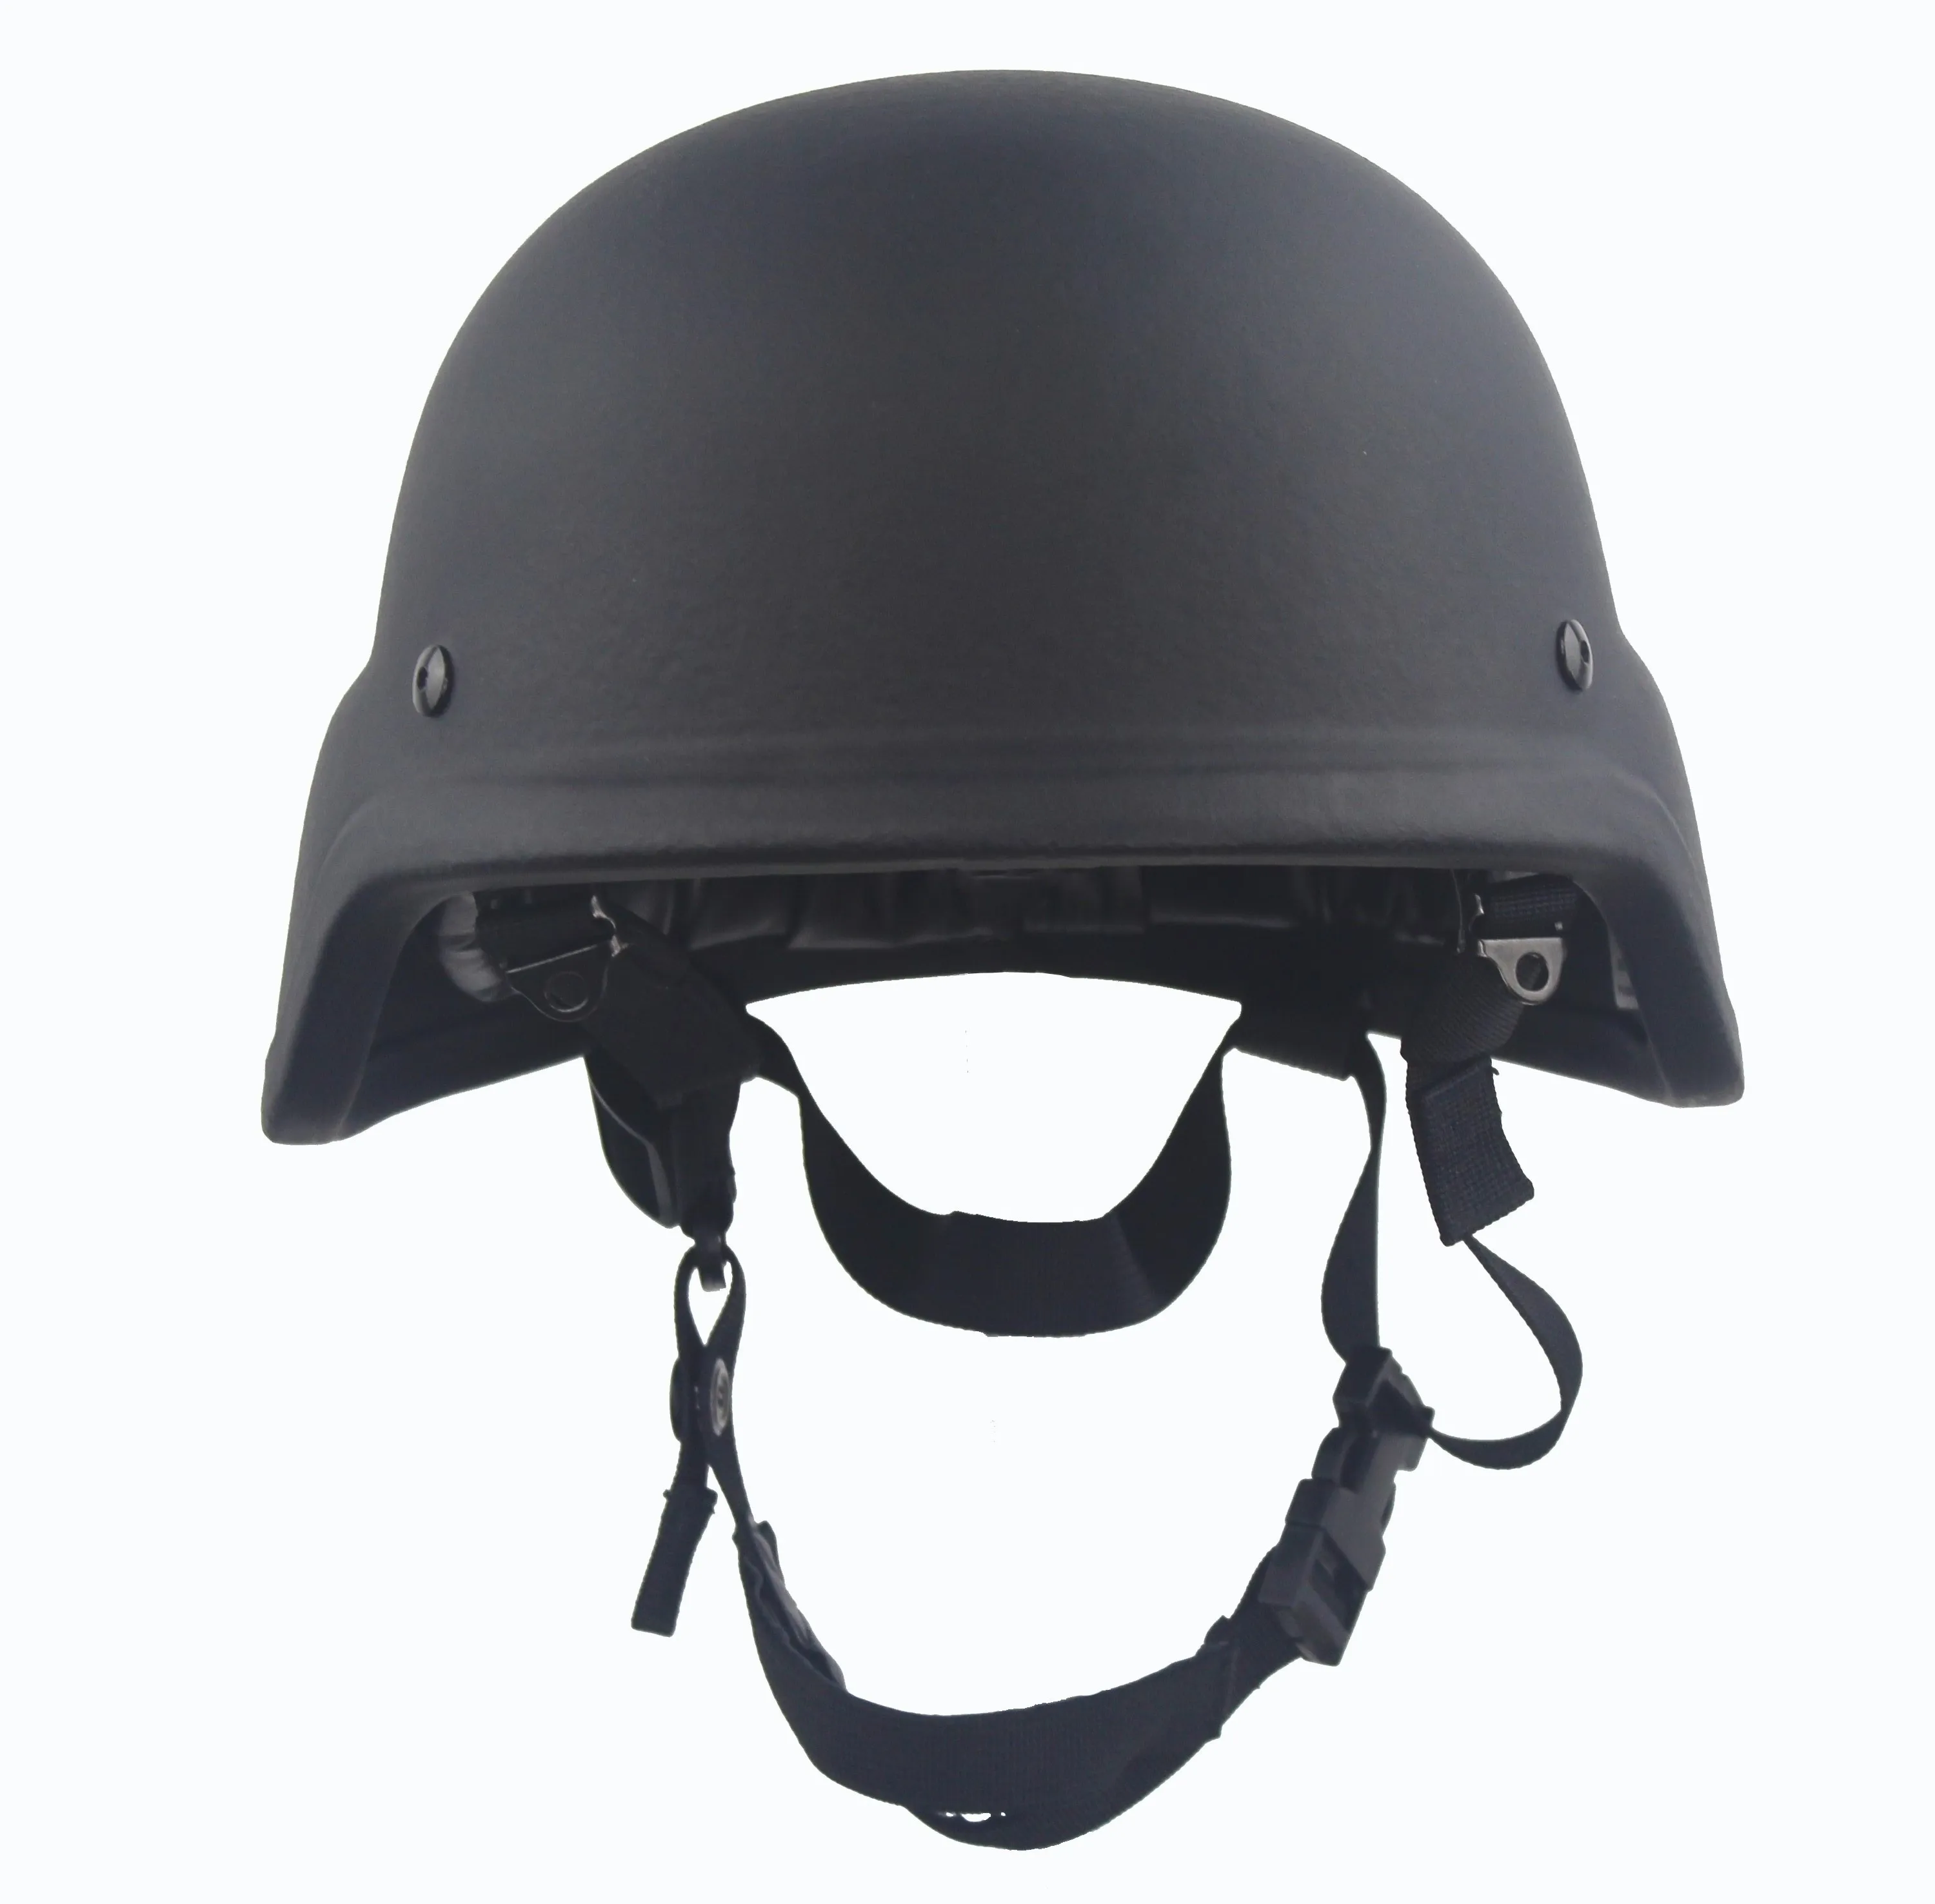 防弹头盔 buy 防弹头盔,防弹头盔,军用头盔 product on alibaba.com